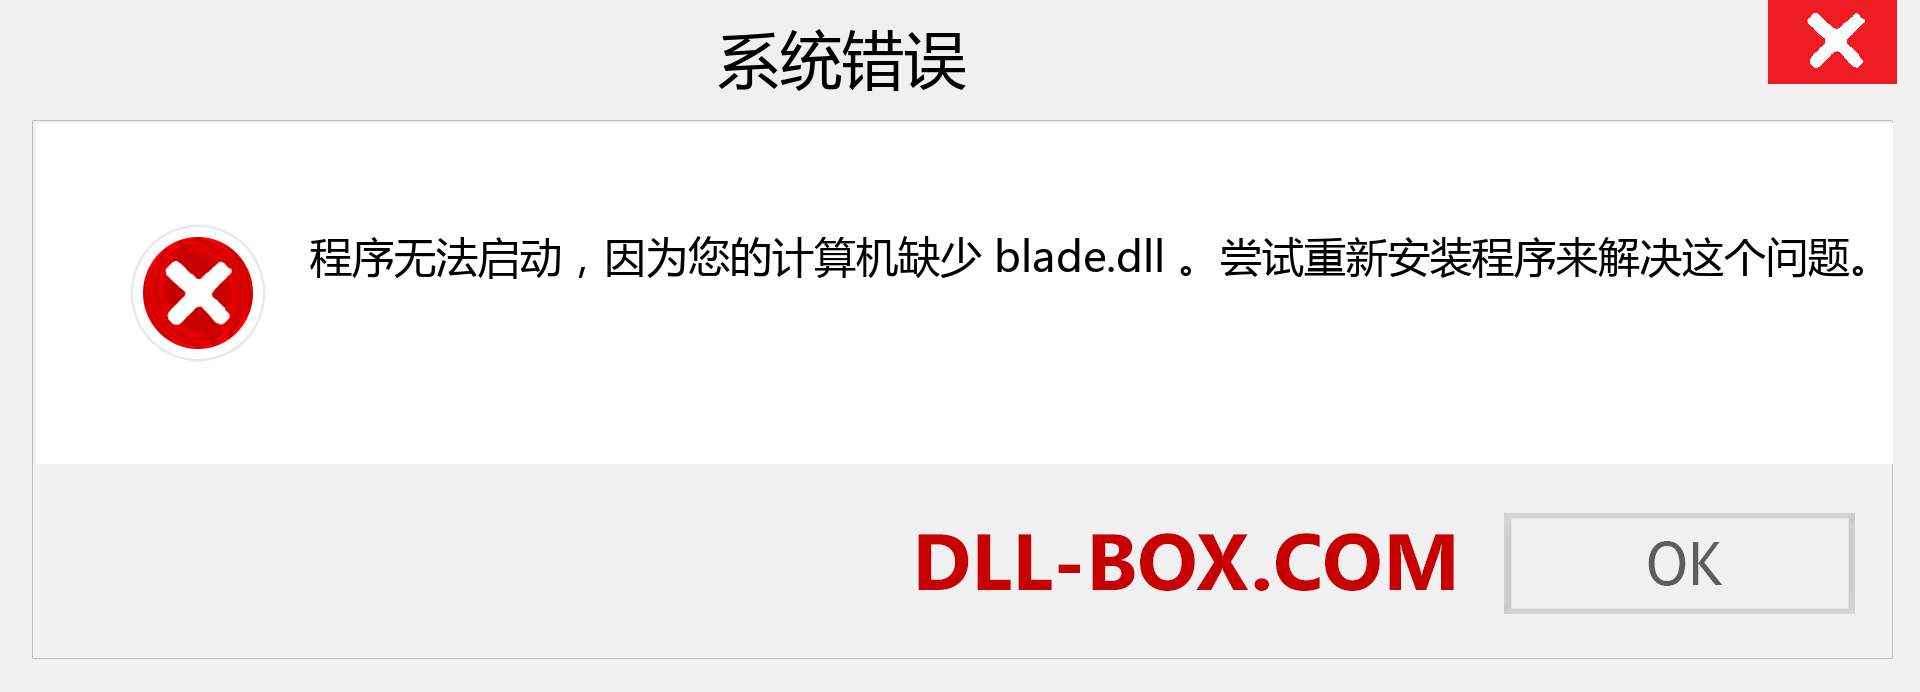 blade.dll 文件丢失？。 适用于 Windows 7、8、10 的下载 - 修复 Windows、照片、图像上的 blade dll 丢失错误